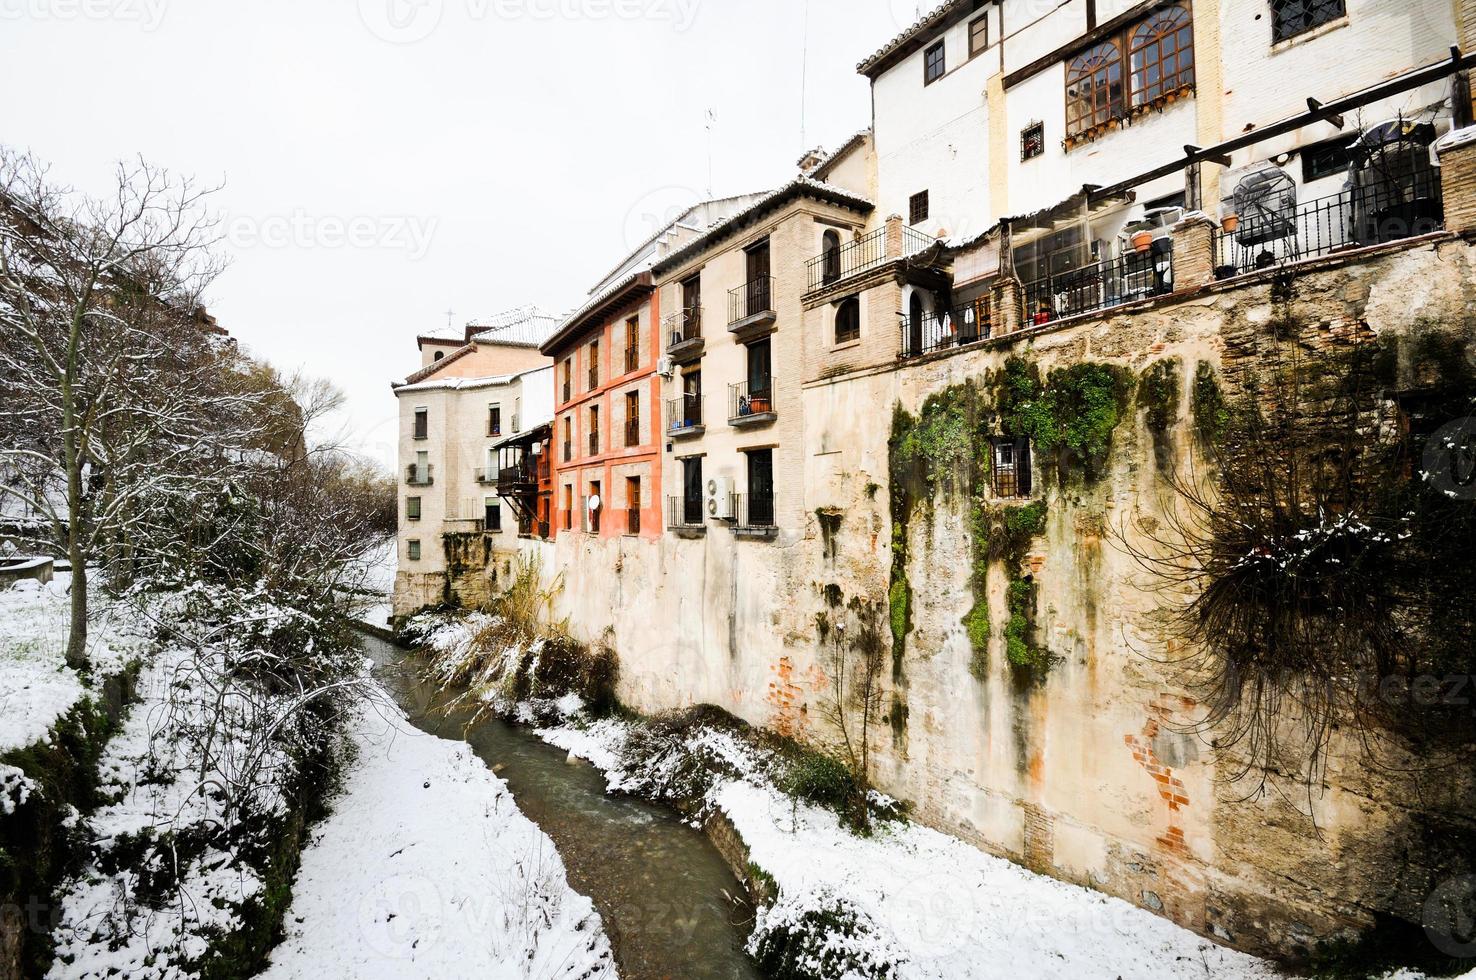 Schneesturm mit Schneematsch auf Bürgersteigen. Granada foto